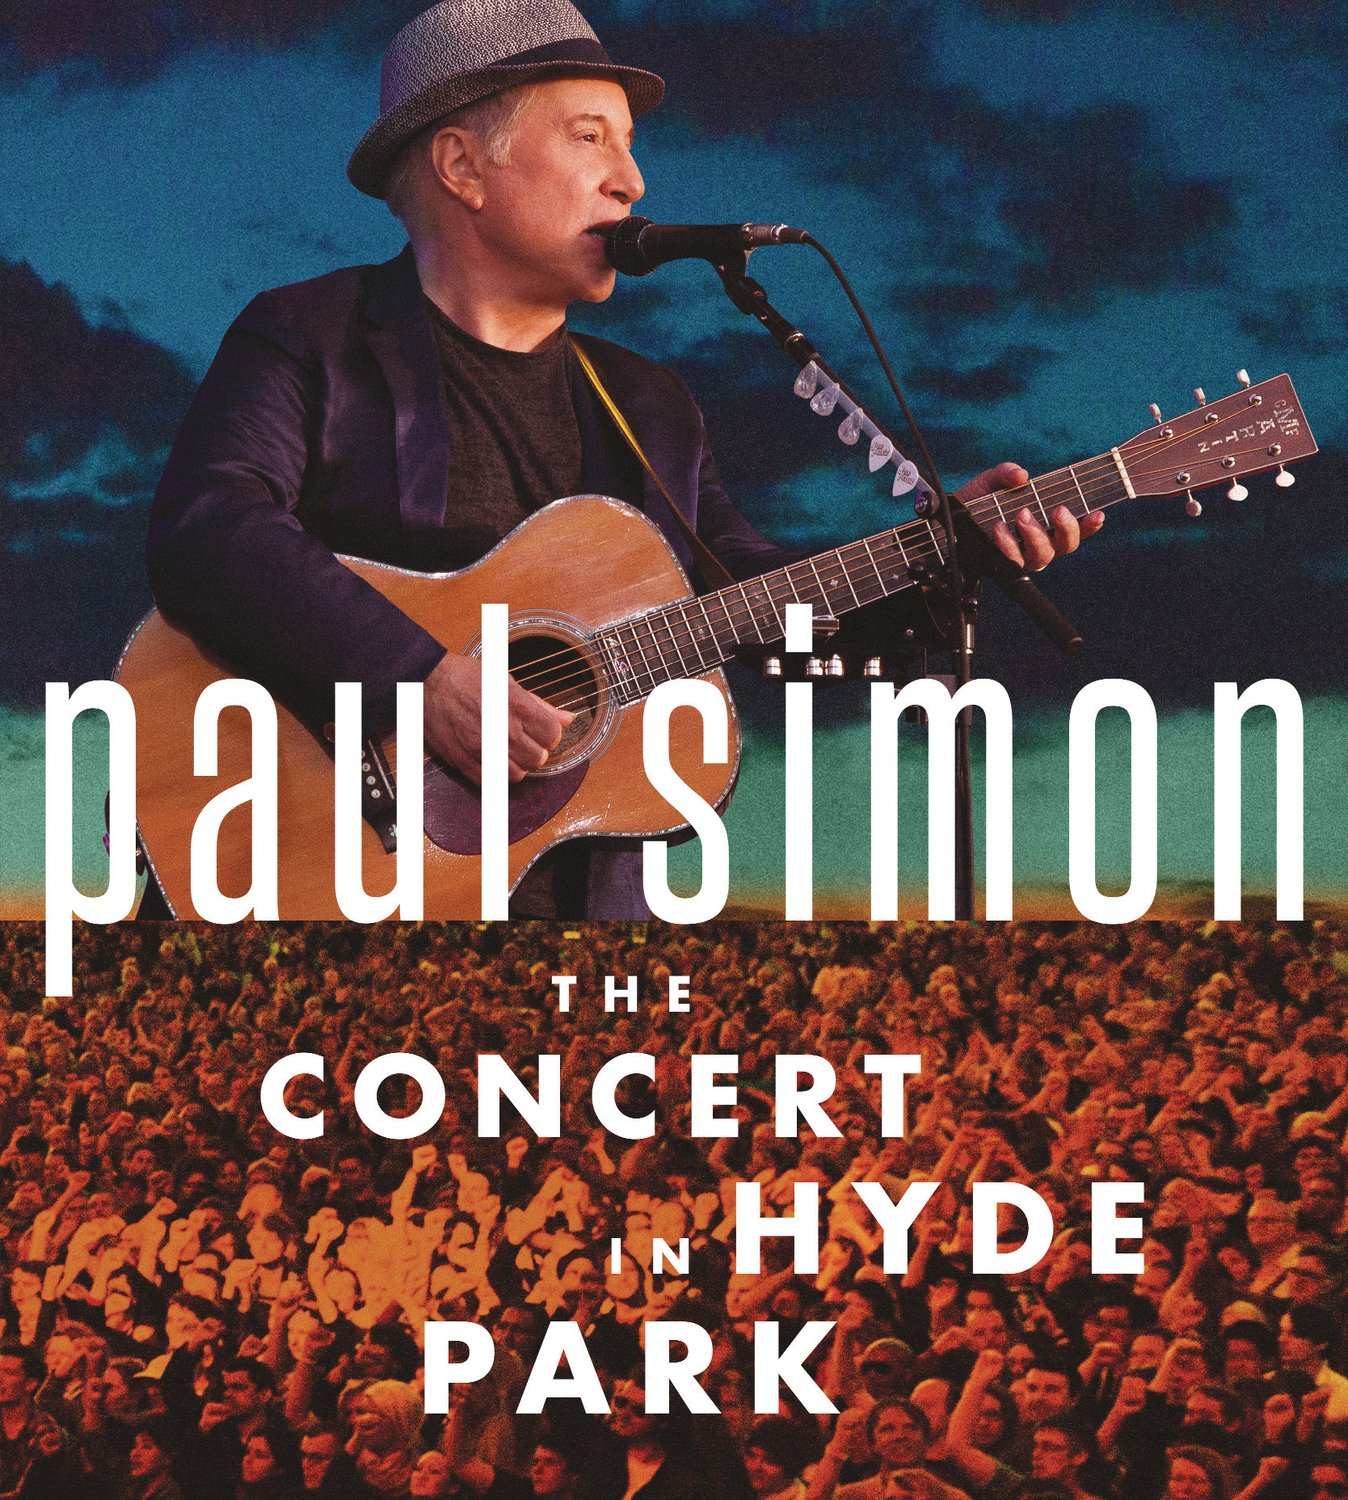 Paul Simon - The Concert In Hyde Park (2017) [Qobuz FLAC 24bit/48kHz]